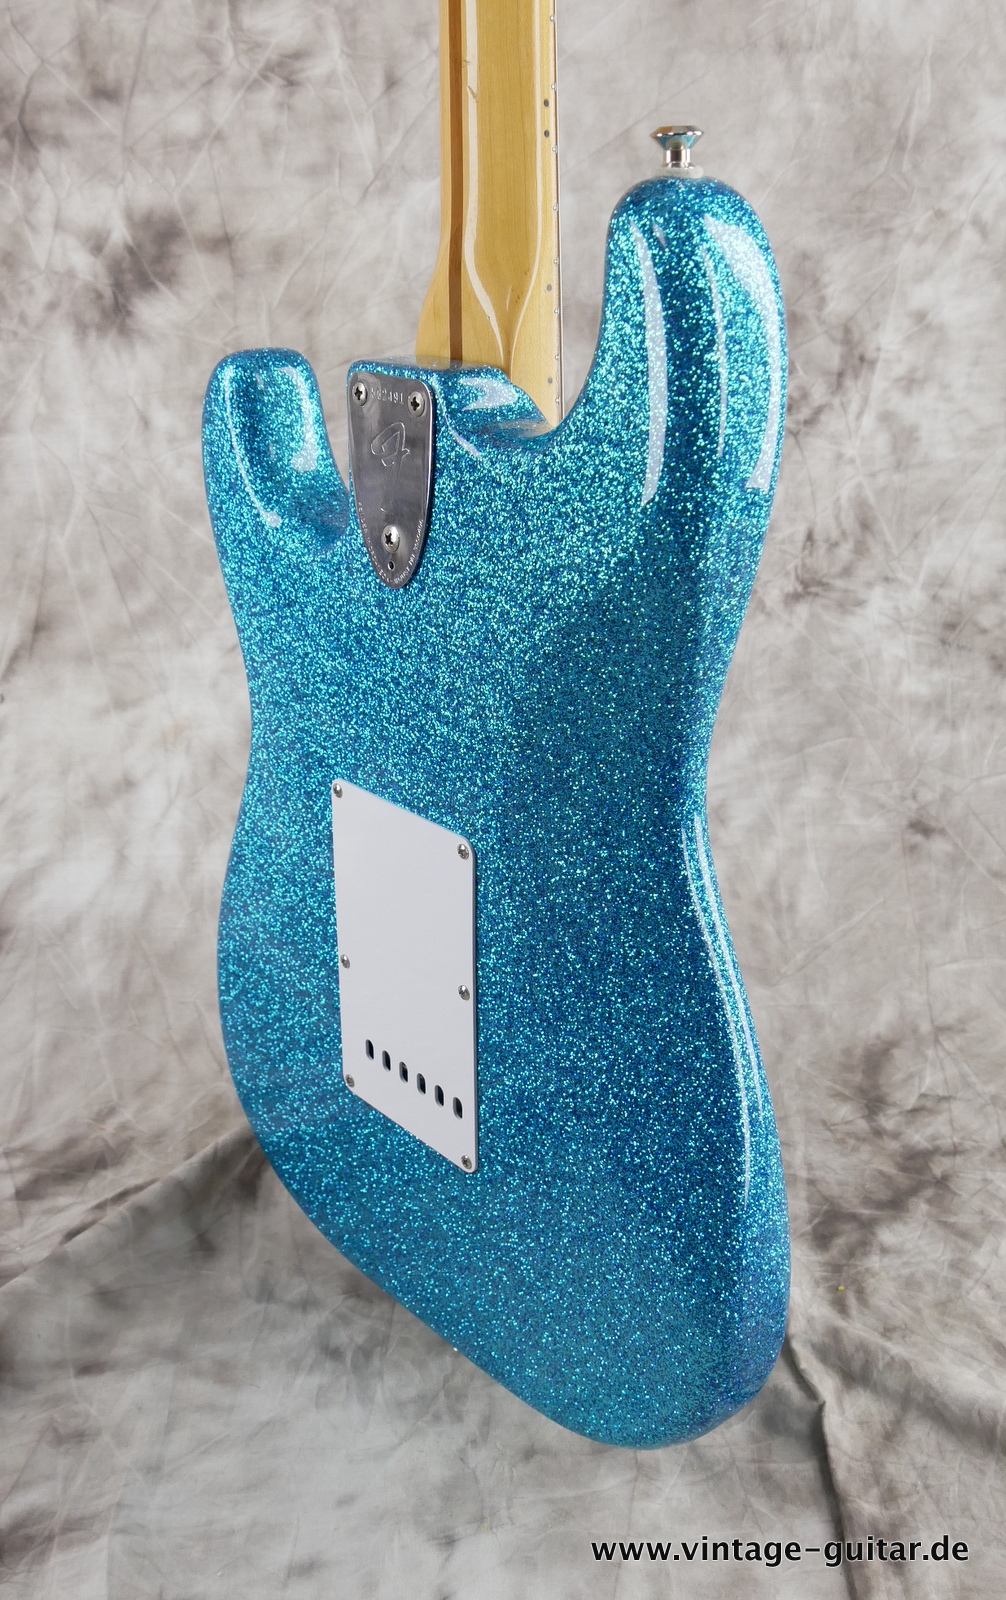 Fender-Stratocaster-1974c-blue-sparkle-011.JPG